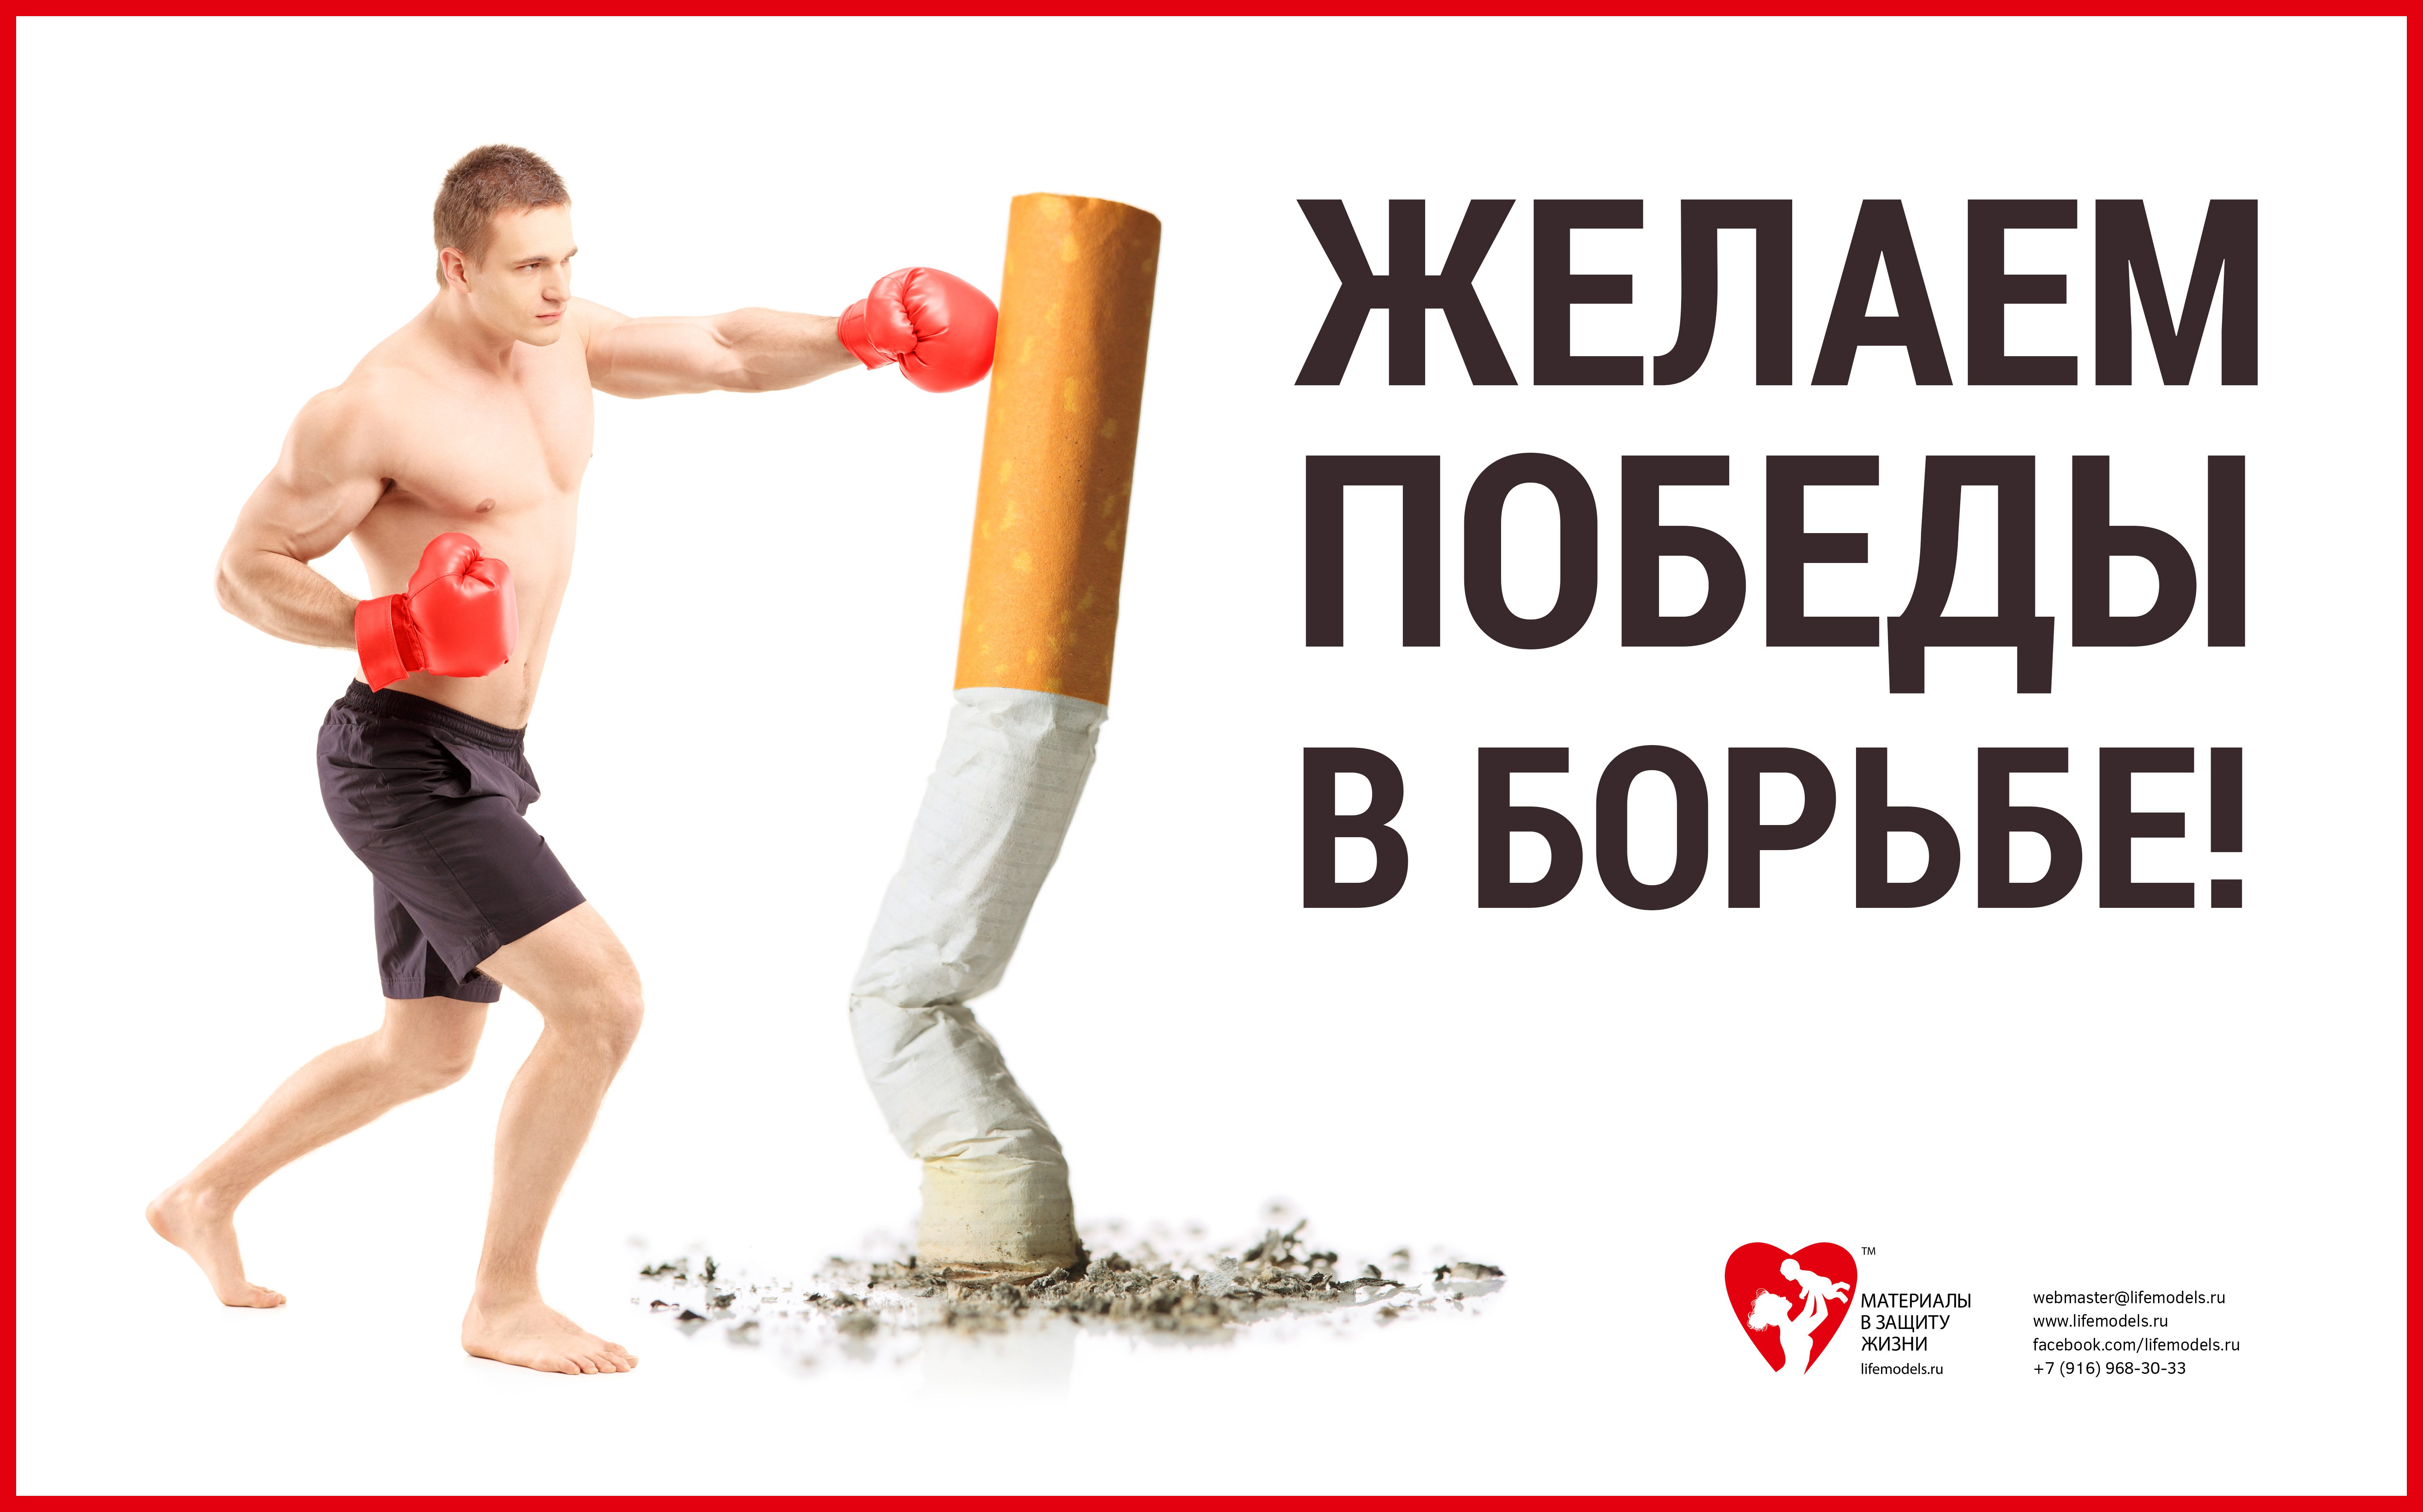 Боремся за победу слышим стартовый сигнал. Баннер против курения. Спорт против курения. Борьба против курения. Реклама борьба с курением.